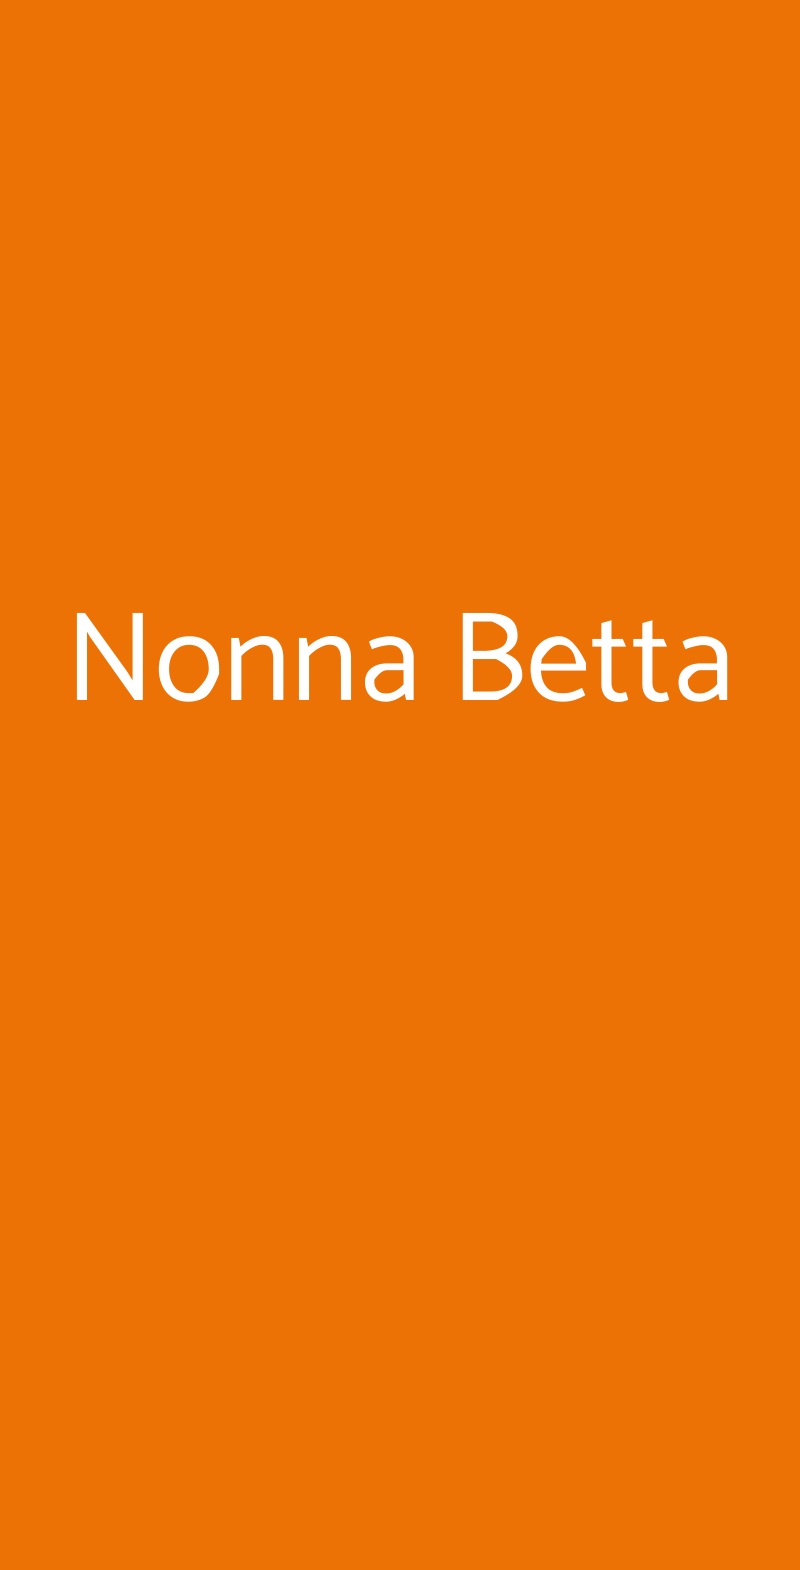 Nonna Betta Roma menù 1 pagina